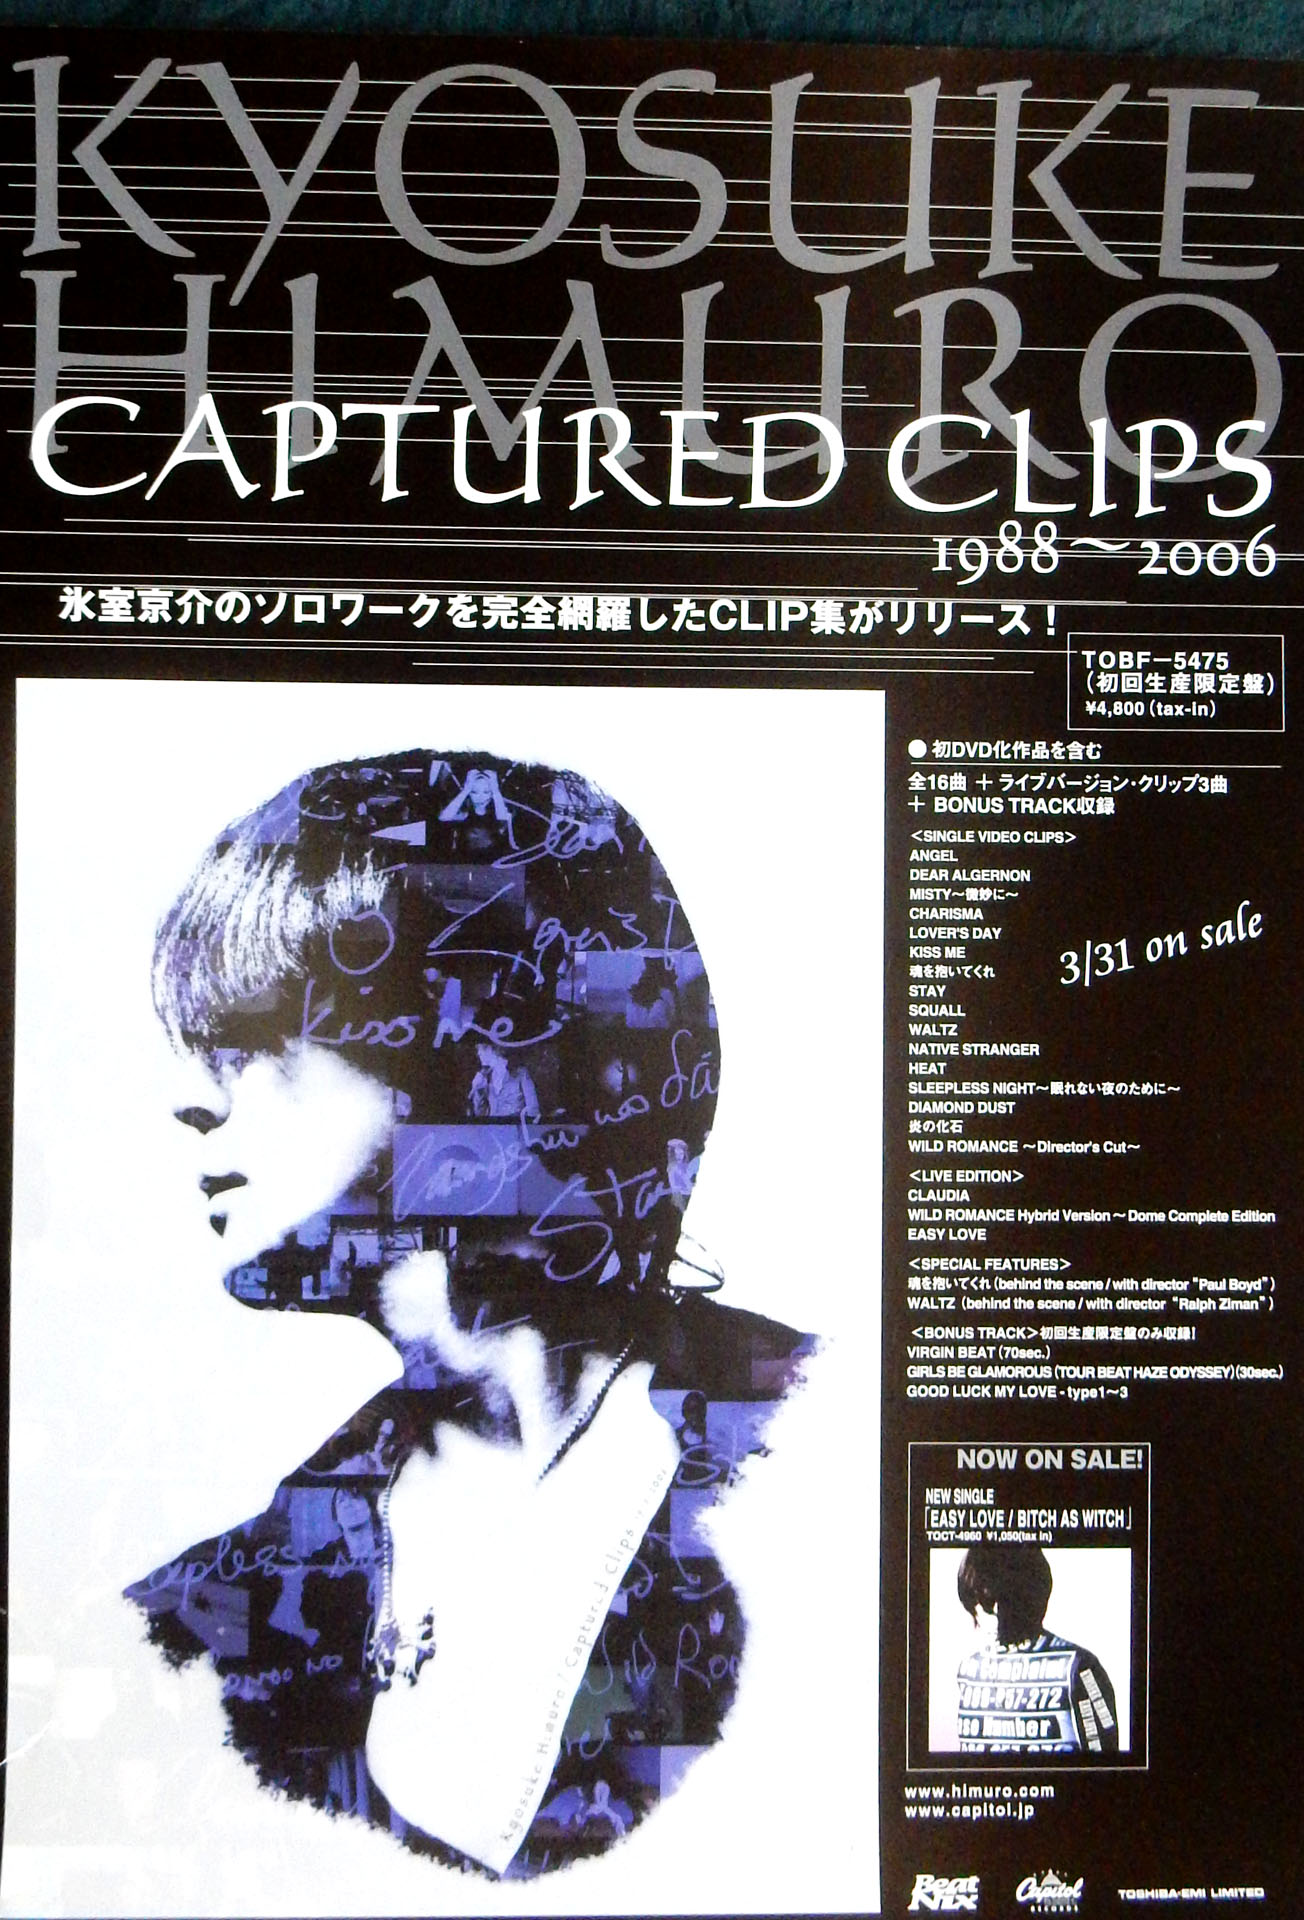 氷室京介 「Captured Clips 1988-2006」のポスター